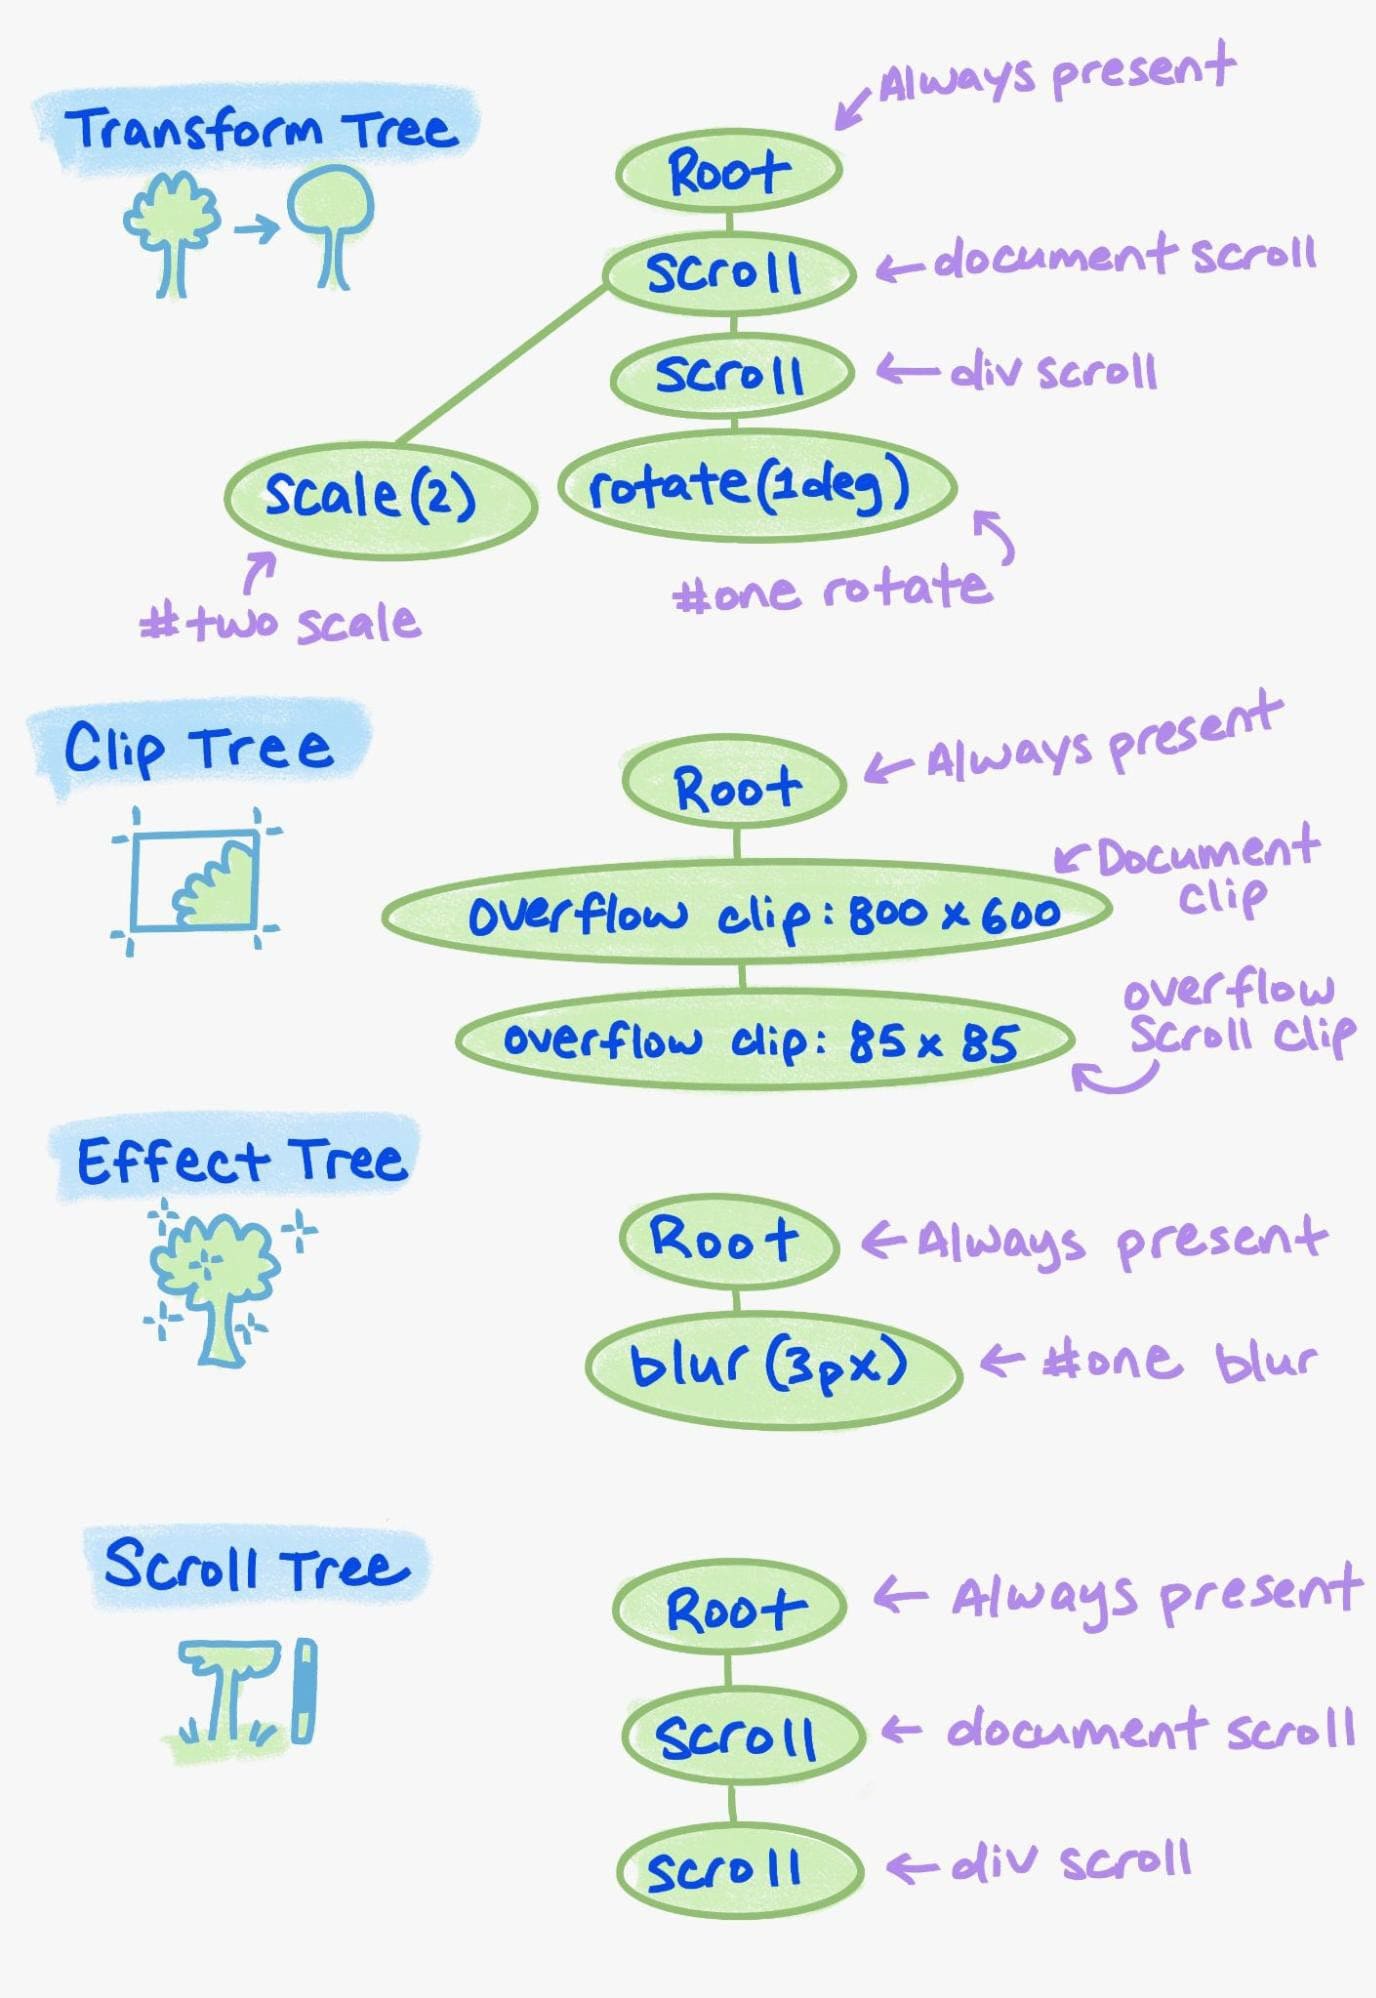 Een voorbeeld van de verschillende elementen in de eigenschappenboom.